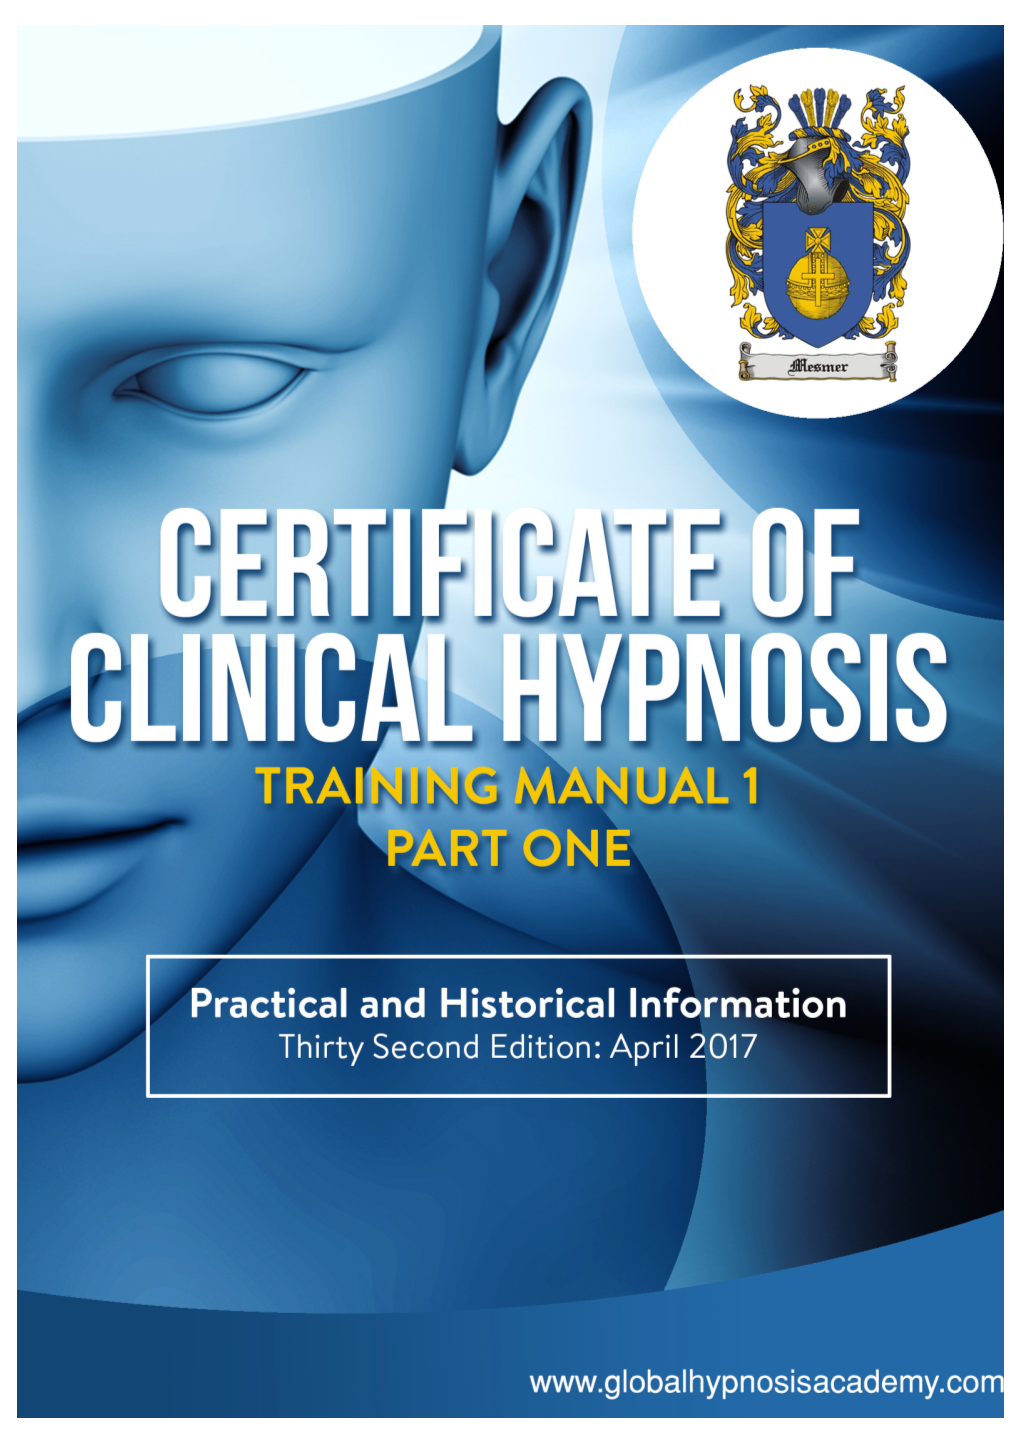 Hypnosis Academy (Established 1996)